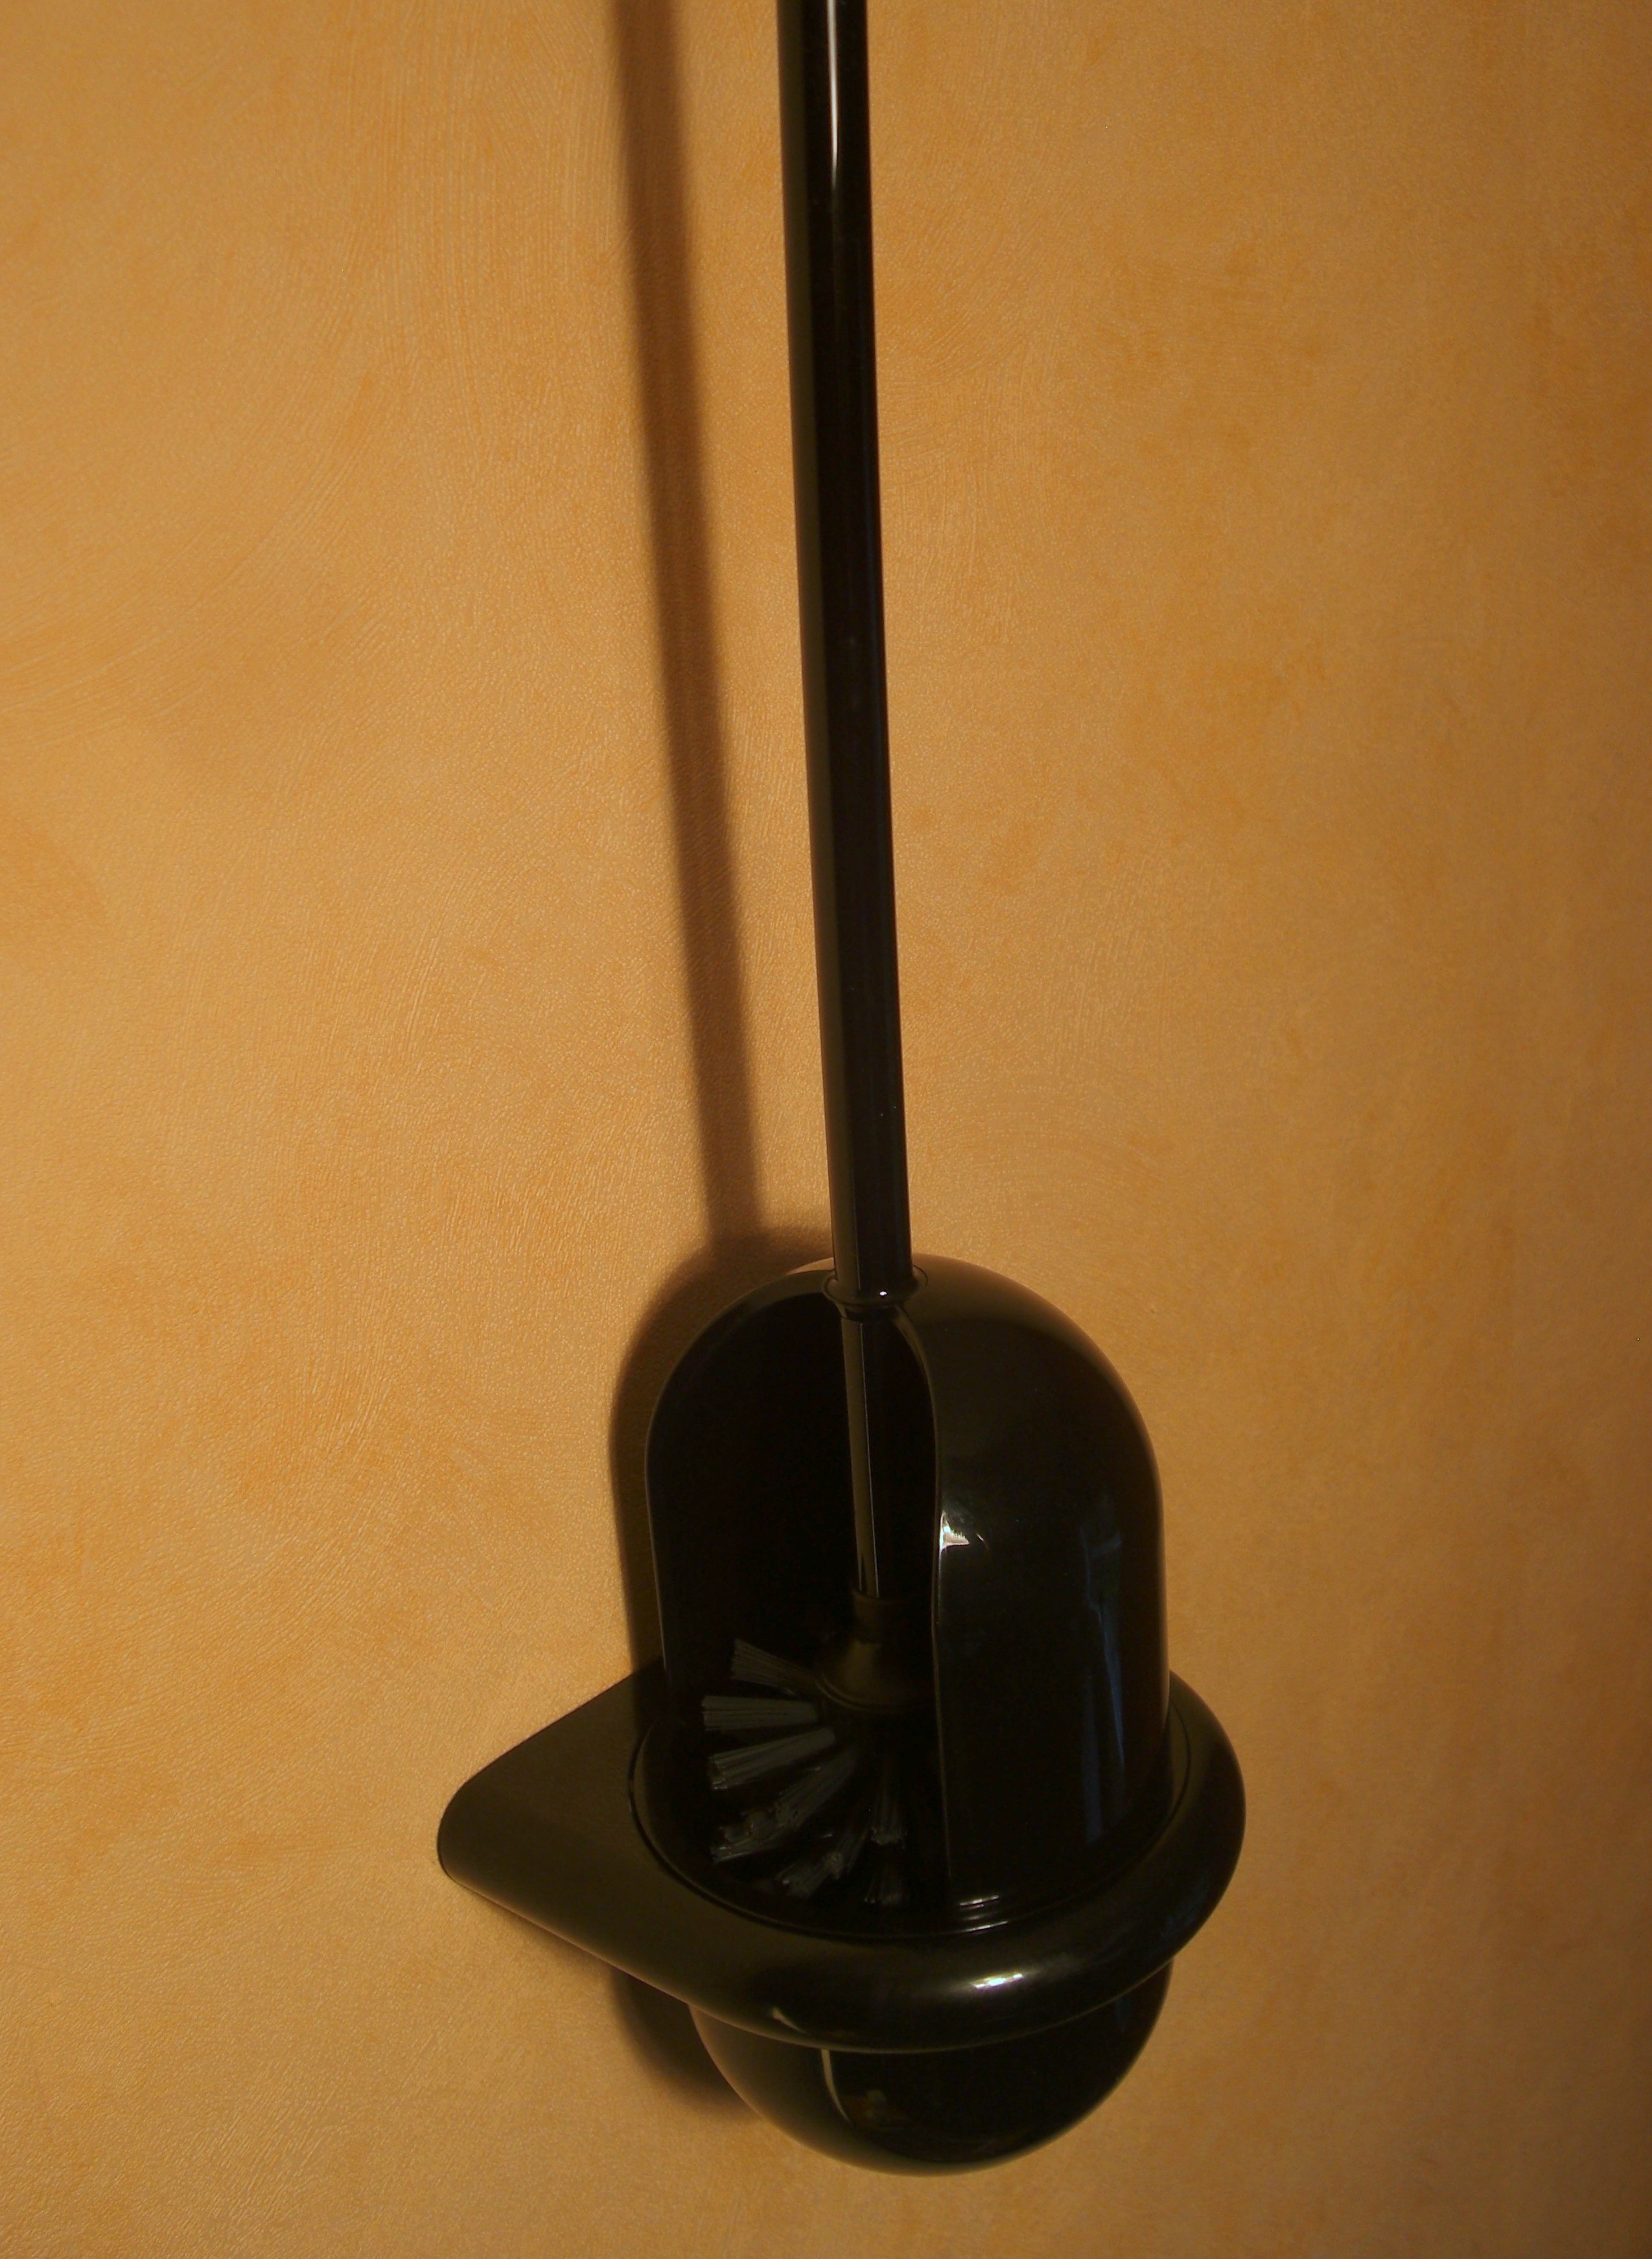 Hewi Serie 477 WC-Bürstengarnitur apfelgrün; Toilettenbürste 477.20.100 74 